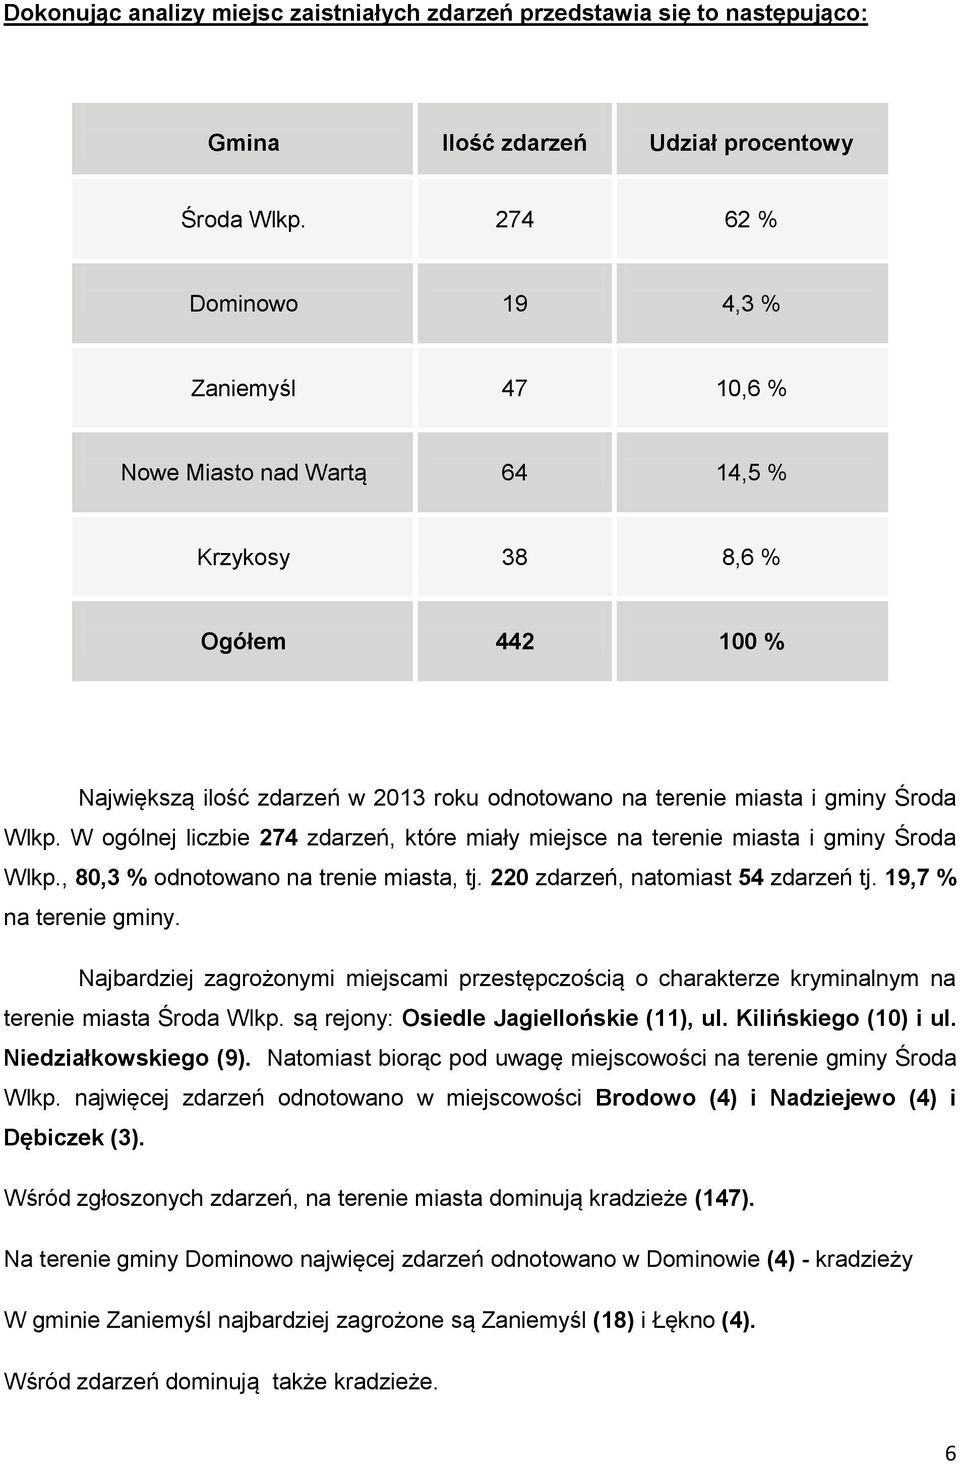 W ogólnej liczbie 274 zdarzeń, które miały miejsce na terenie miasta i gminy Środa Wlkp., 80,3 % odnotowano na trenie miasta, tj. 220 zdarzeń, natomiast 54 zdarzeń tj. 19,7 % na terenie gminy.